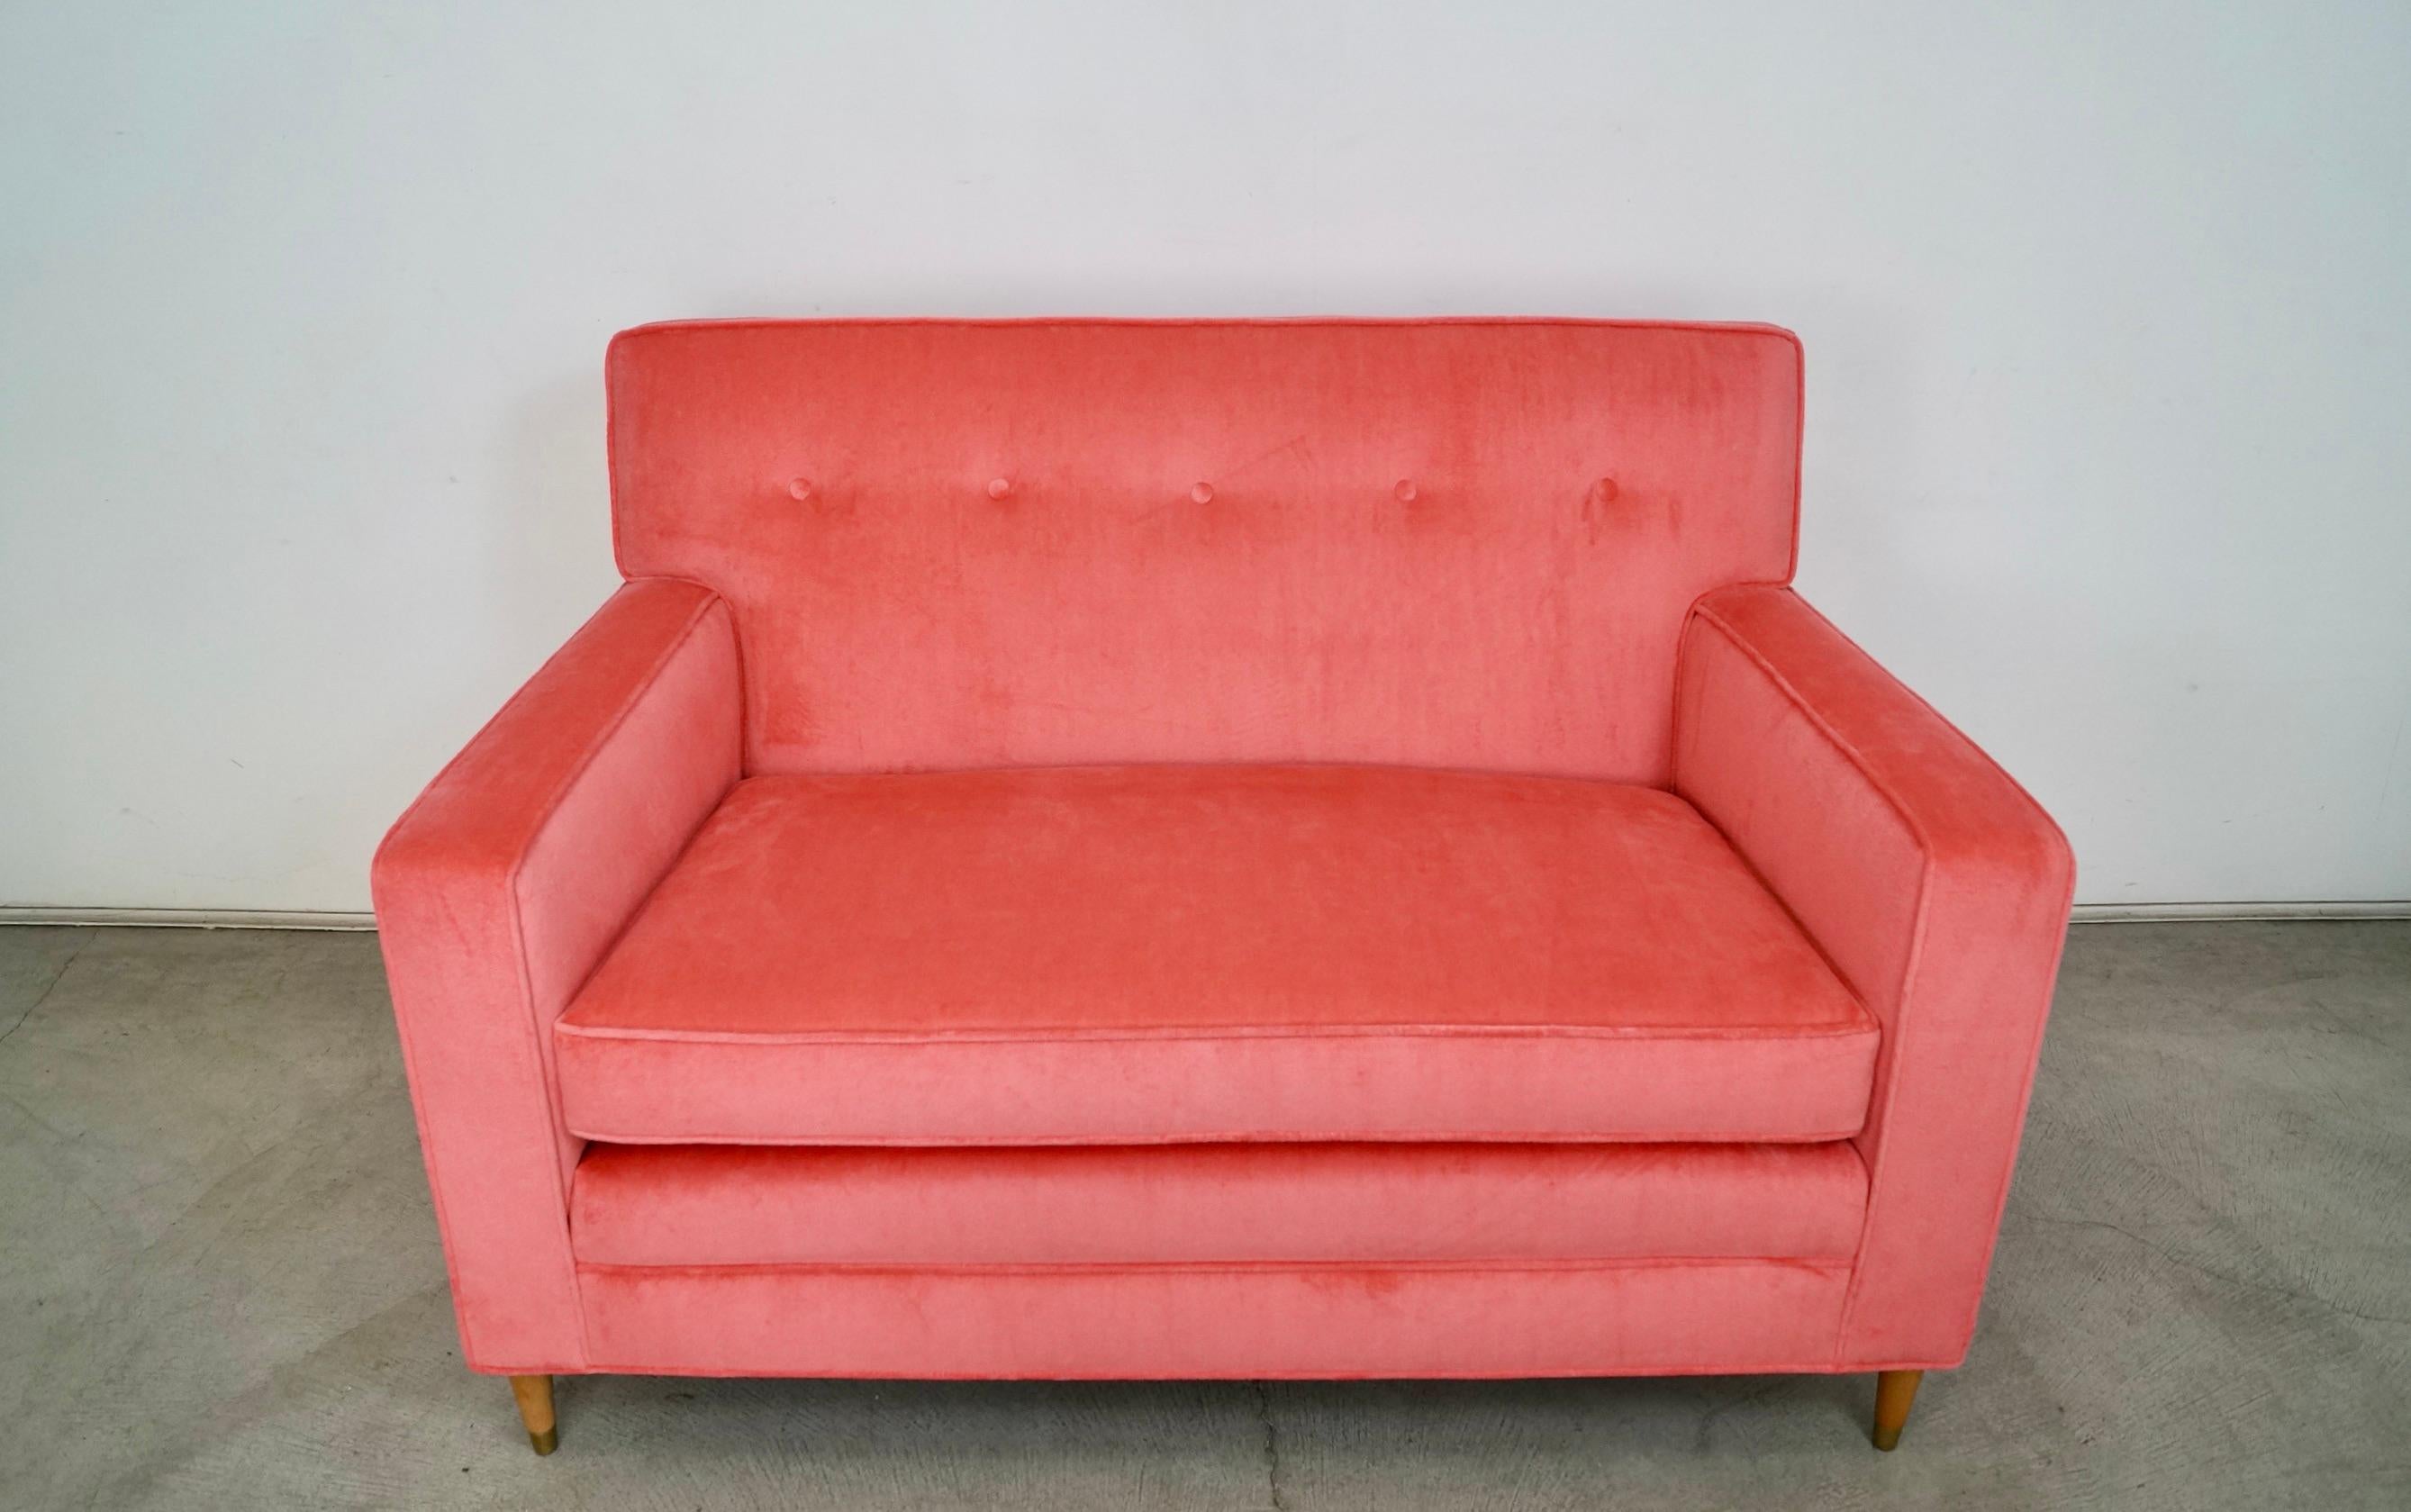 Wunderschöne originale Hollywood Regency Midcentury Modern Couch zu verkaufen. Er wurde in den 1950er Jahren hergestellt und professionell mit neuem Samt und Schaumstoff gepolstert. Die Beine sind aus massiver Eiche und wurden in einem natürlichen